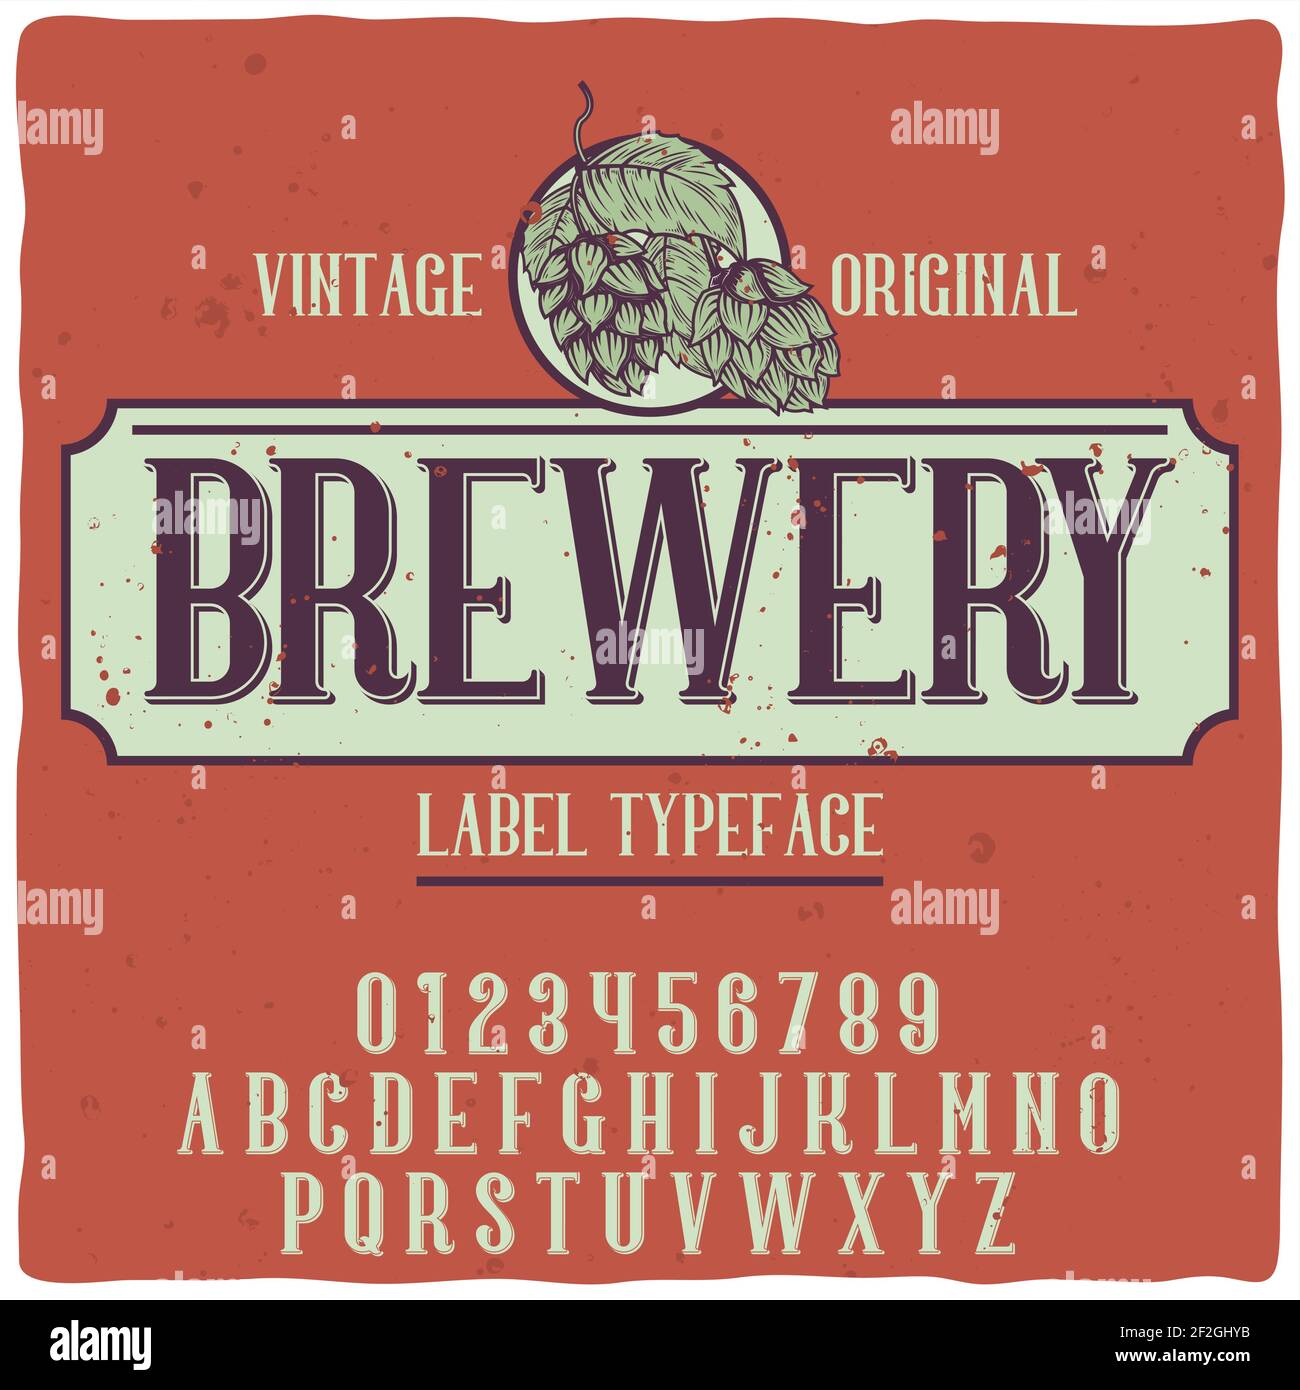 Original-Etikettschrift mit dem Namen 'Brewery'. Gute handgefertigte Schrift für jedes Label-Design. Stock Vektor